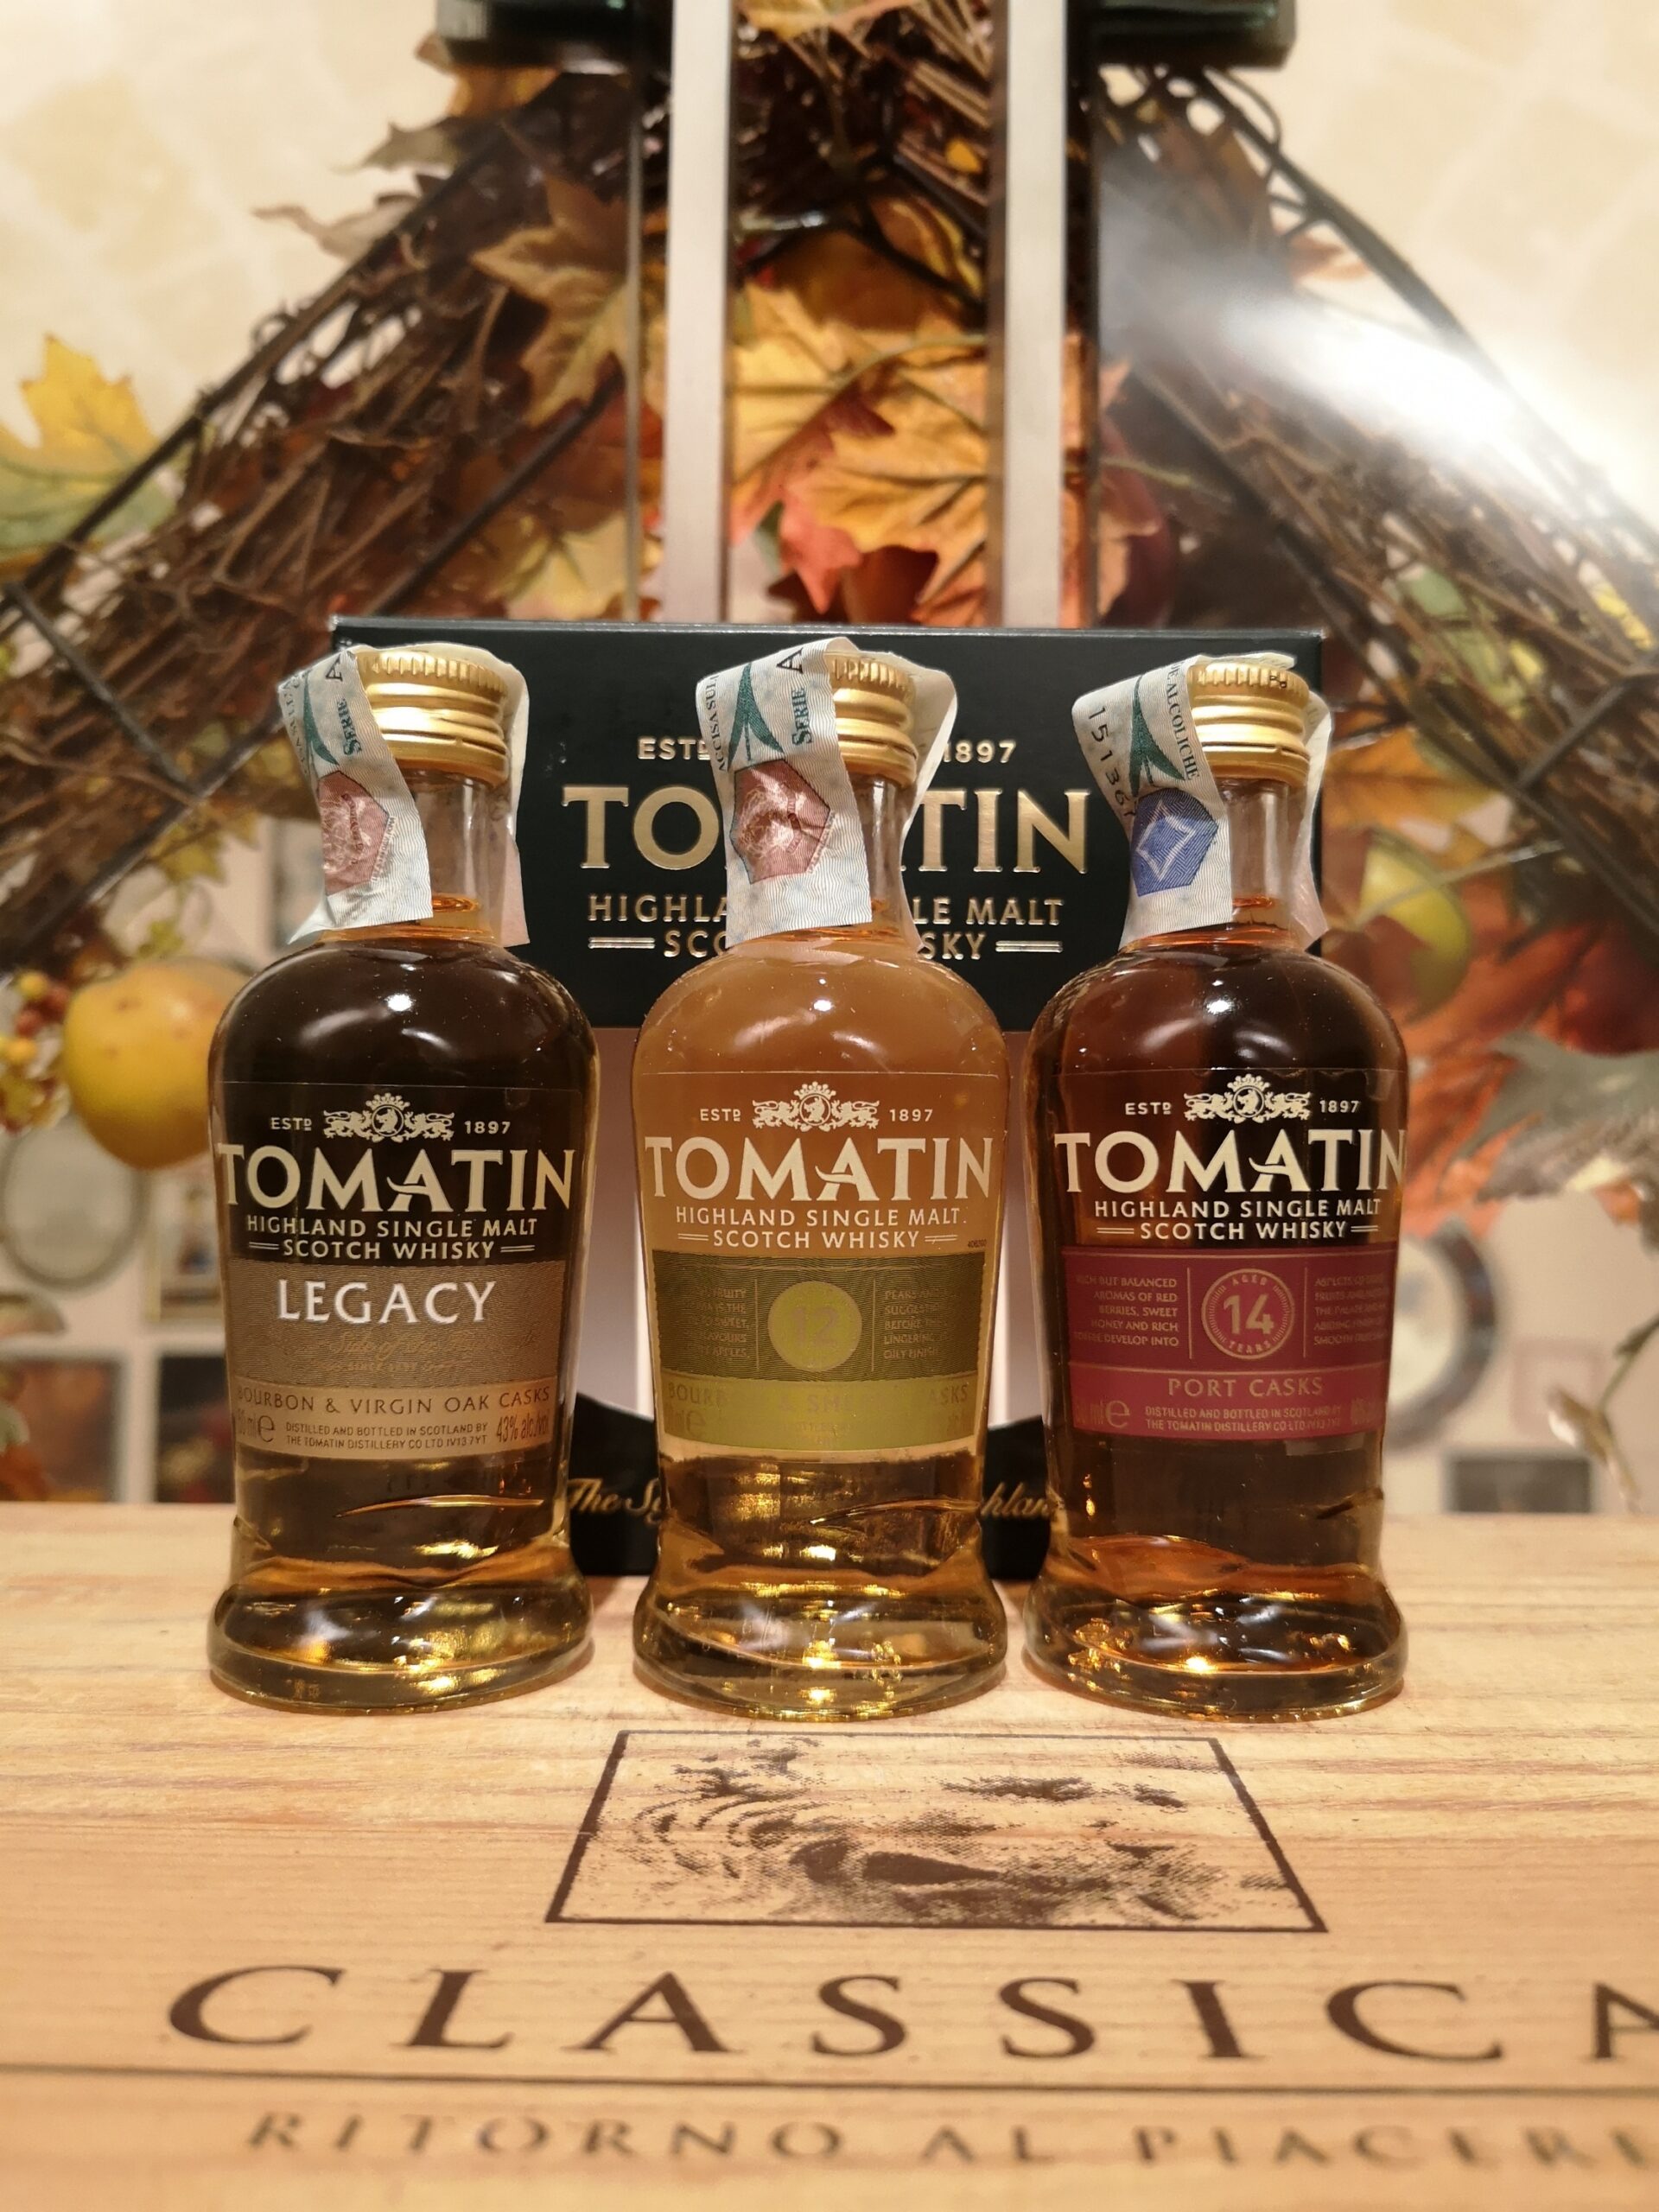 Tomatin Cofanetto Legacy – 12 YO – 14 YO Highland Single Malt Scotch Whisky 5 cl